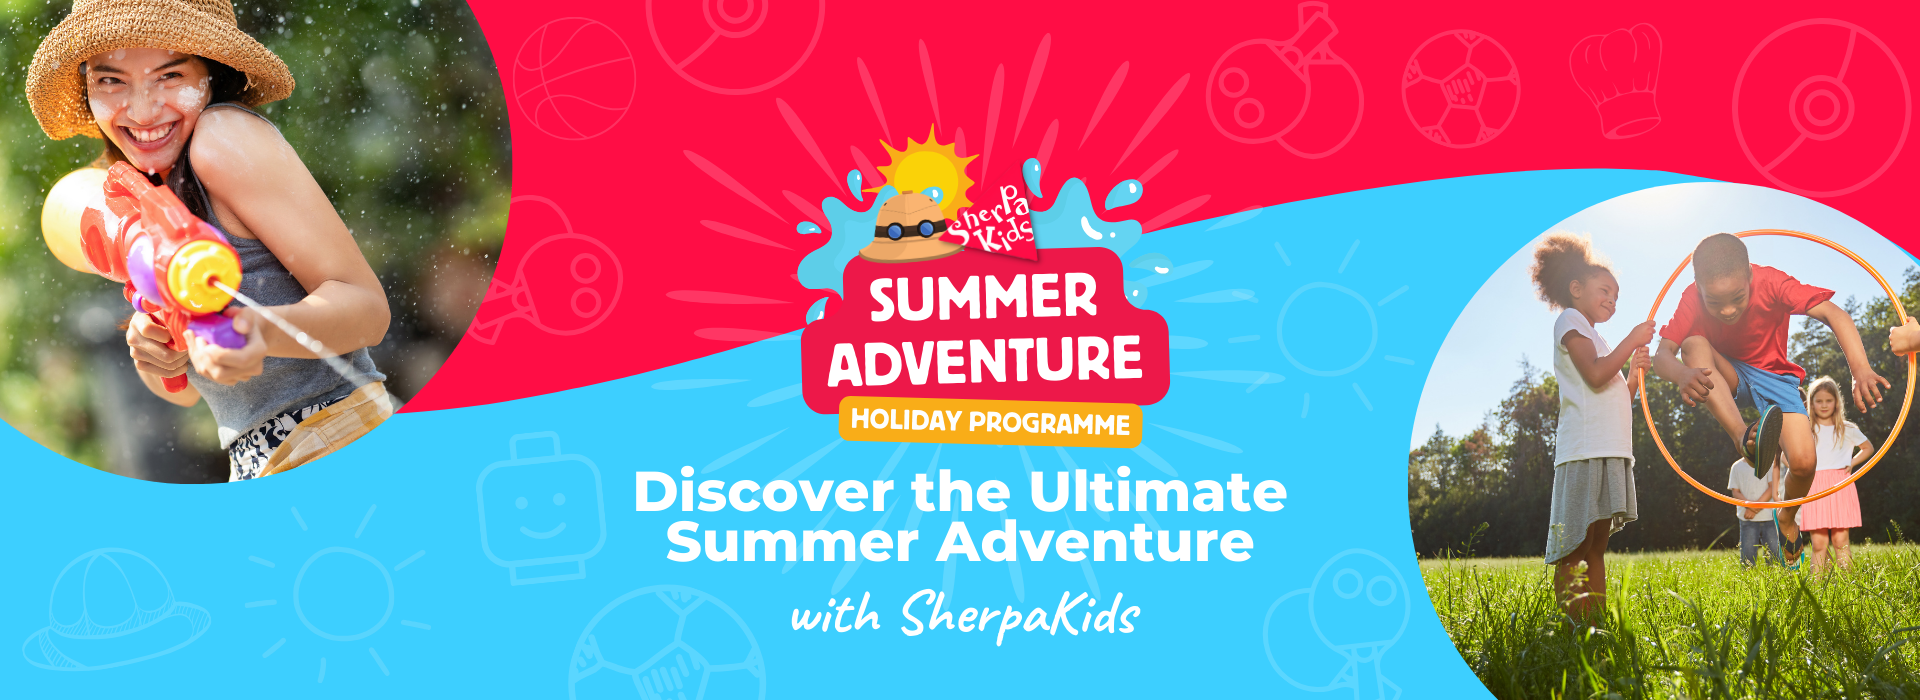 Sherpa Kids Adventure Programme